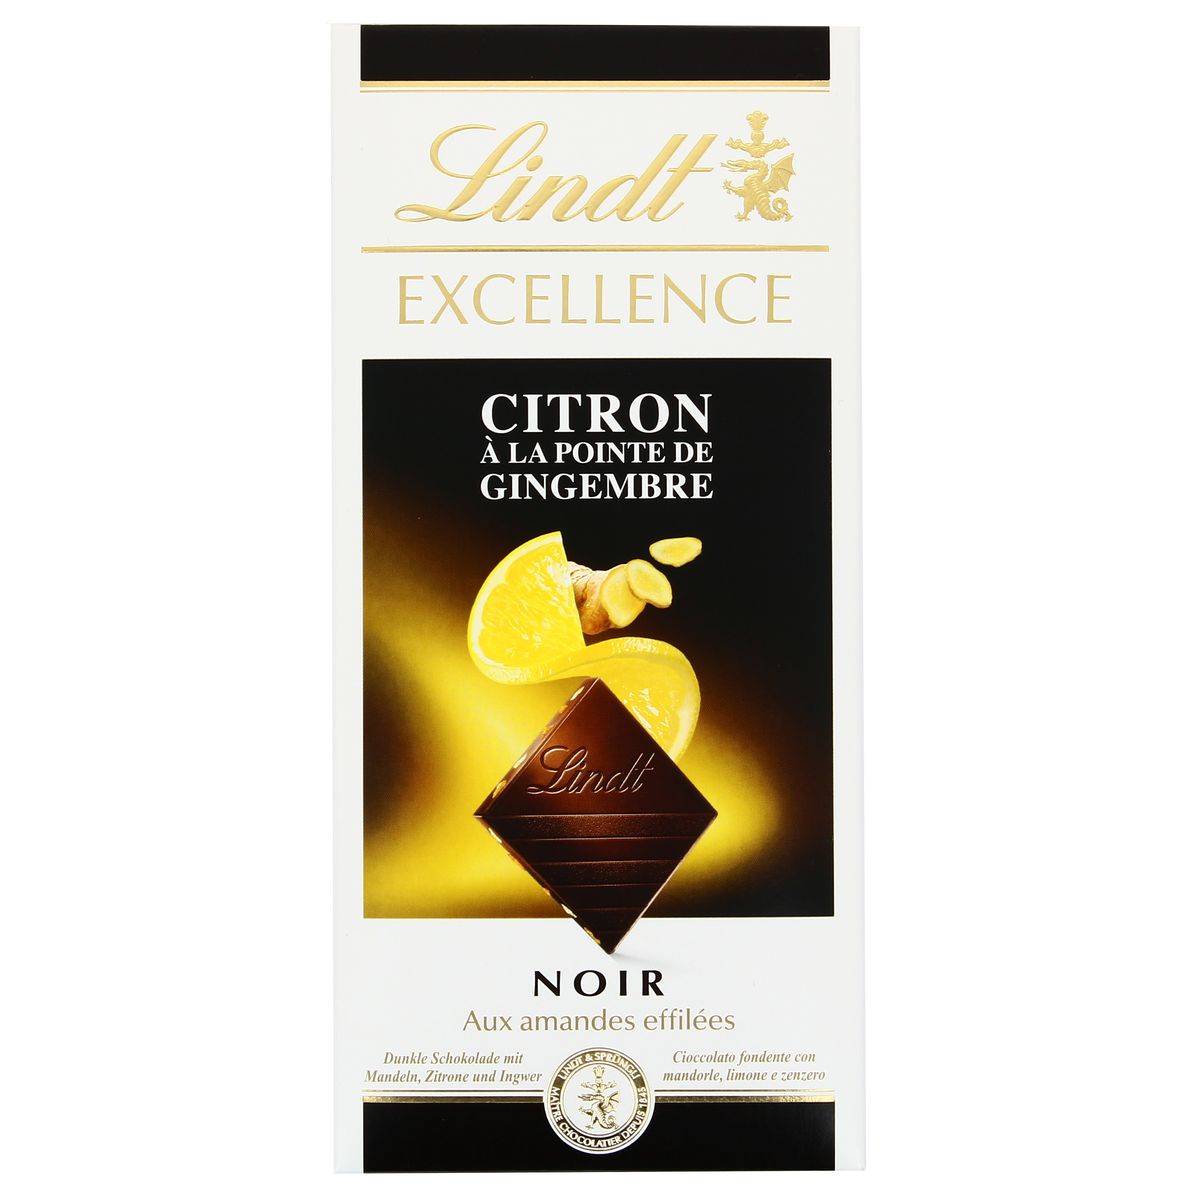 Acheter Lindt Chocolat excellence noir citron à la pointe de gingembre